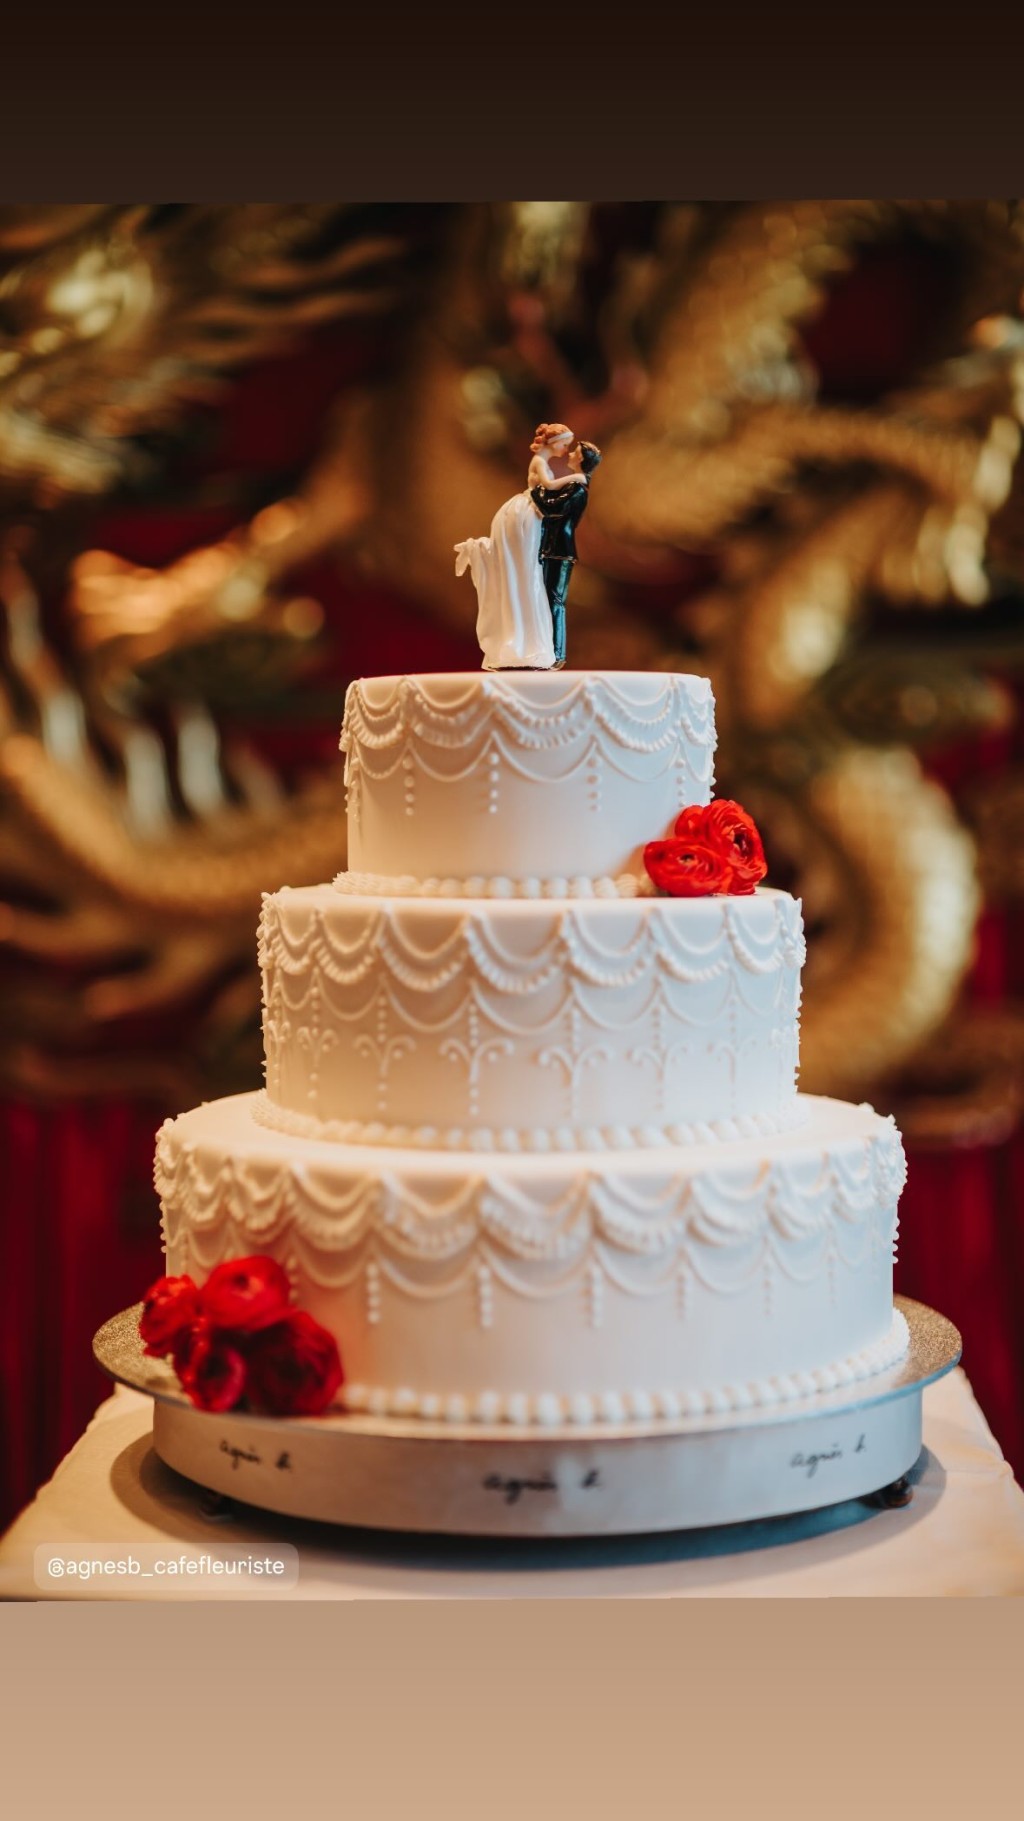 結婚蛋糕很傳統。